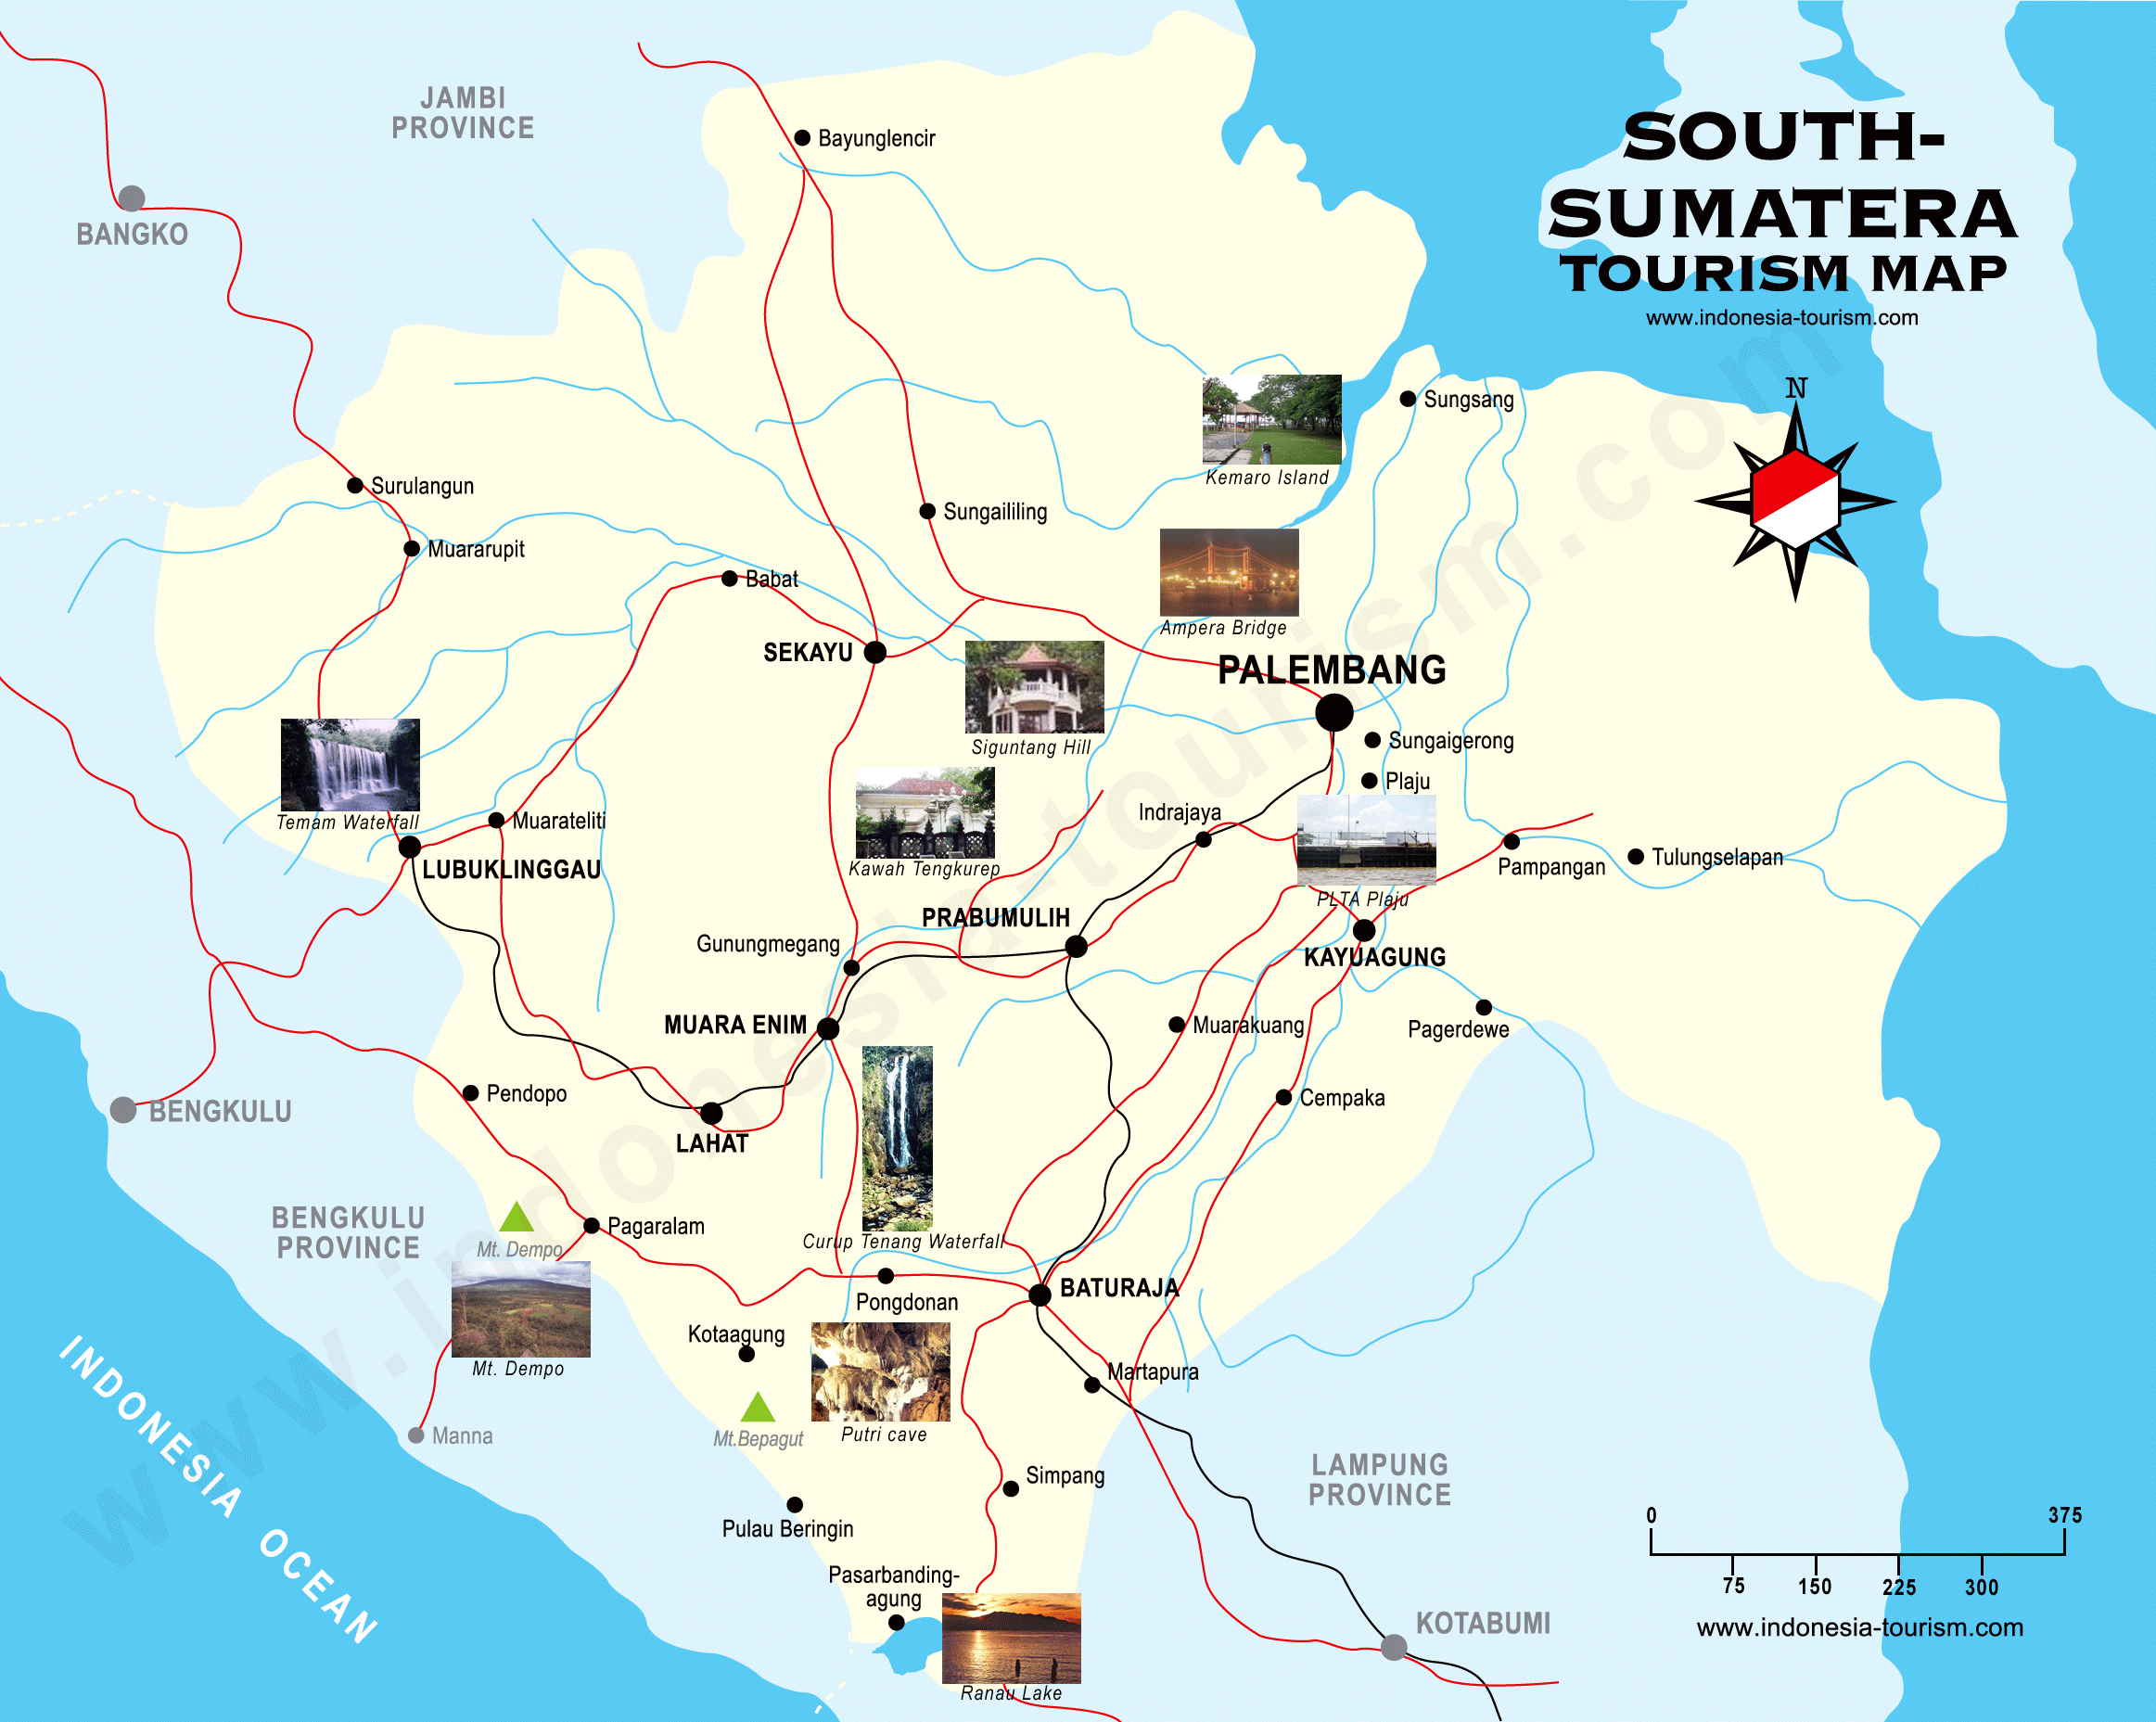 Palembang sumatera tourism map